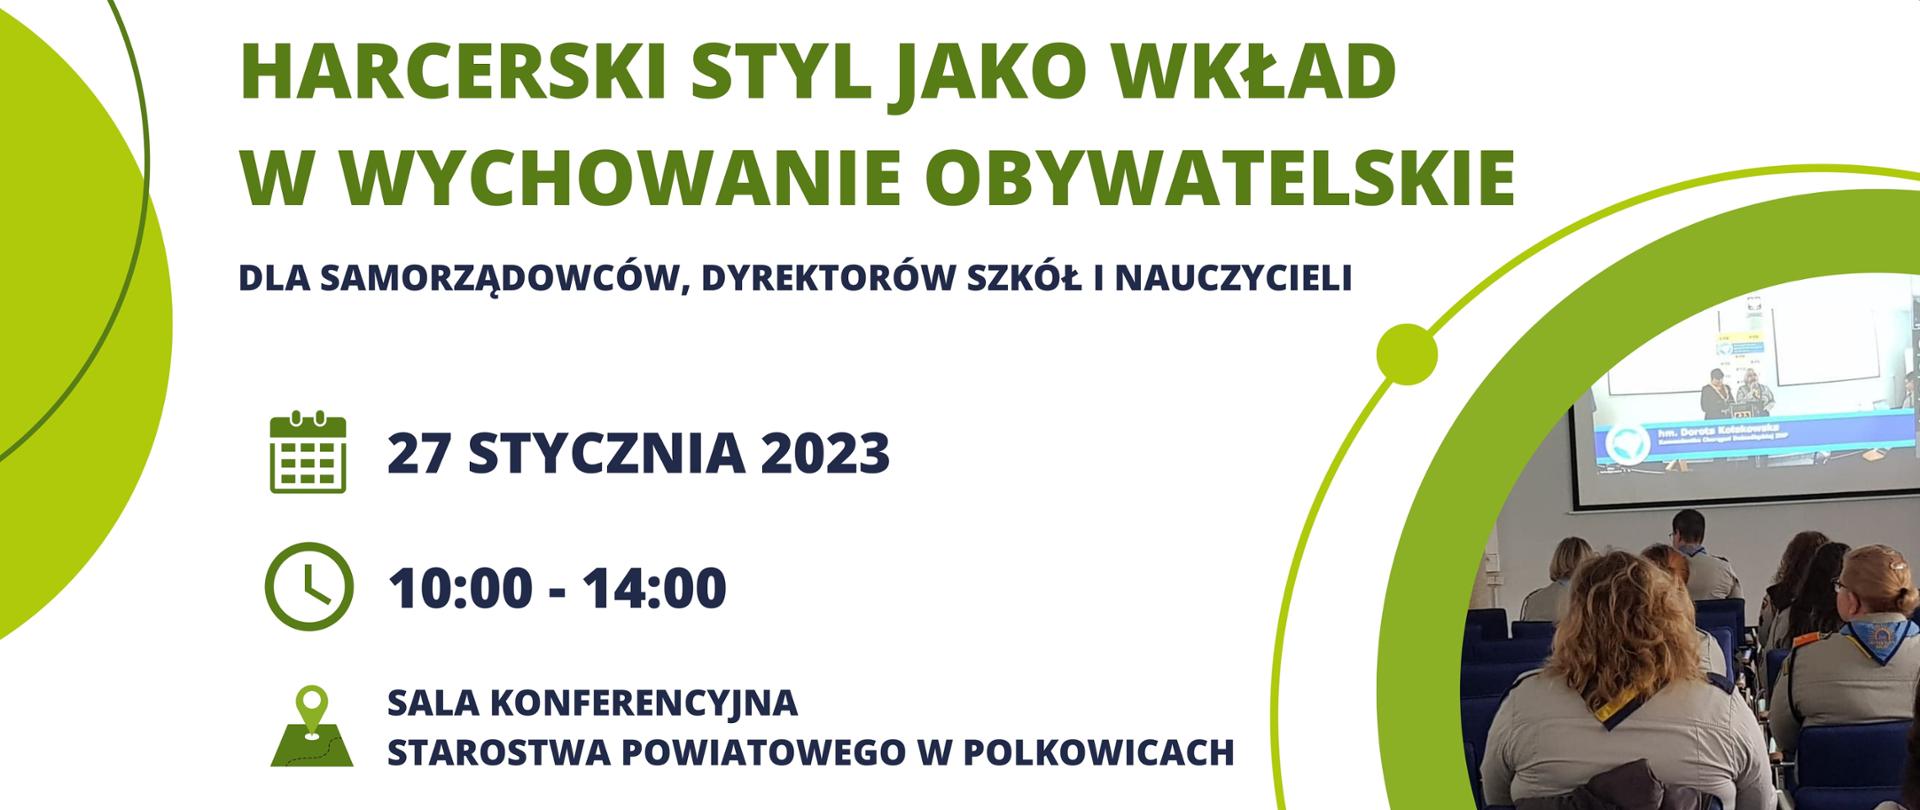 Plakat promujący konferencję organizowaną w Polkowicach przez Związek Harcerstwa Polskiego